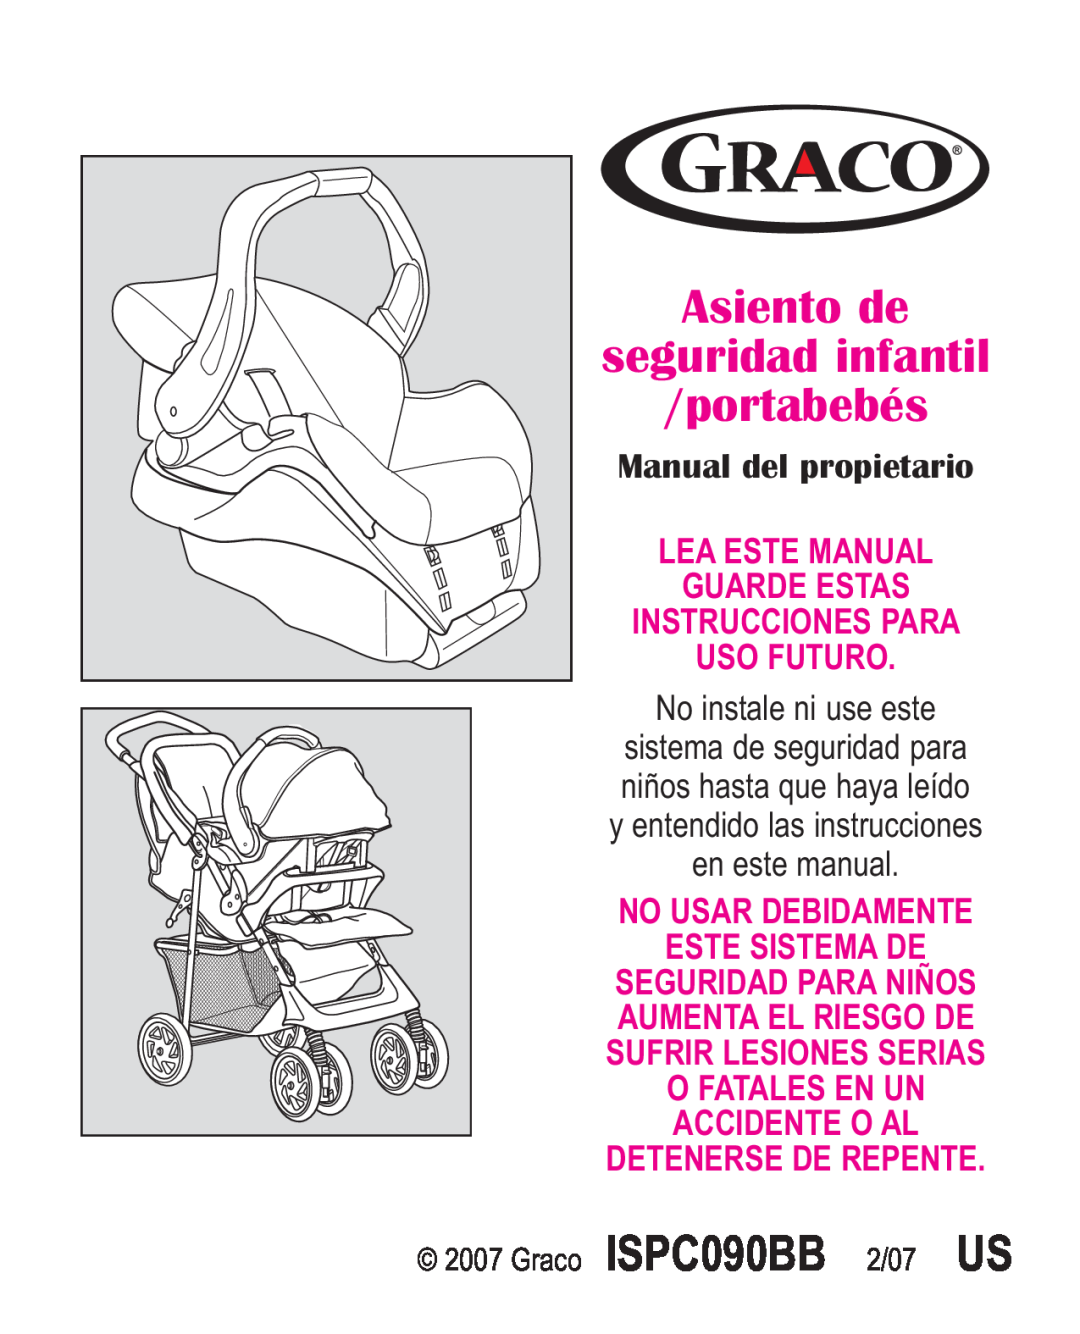 Graco ISPA338AA owner manual Asiento de seguridad infantil portabebés, Manual del propietario 